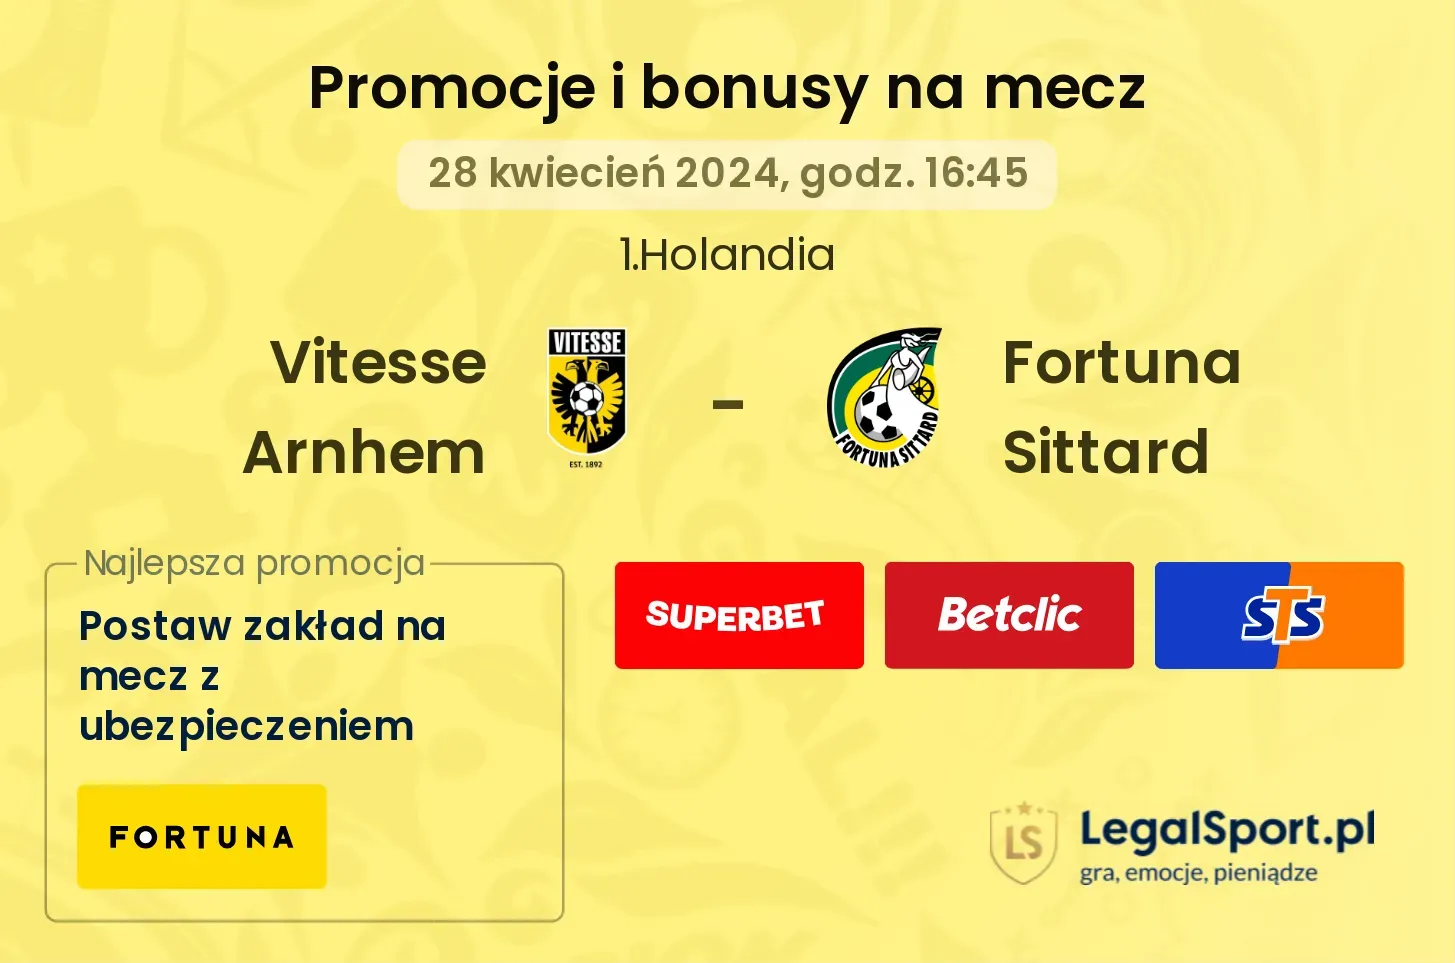 Vitesse Arnhem - Fortuna Sittard promocje bonusy na mecz